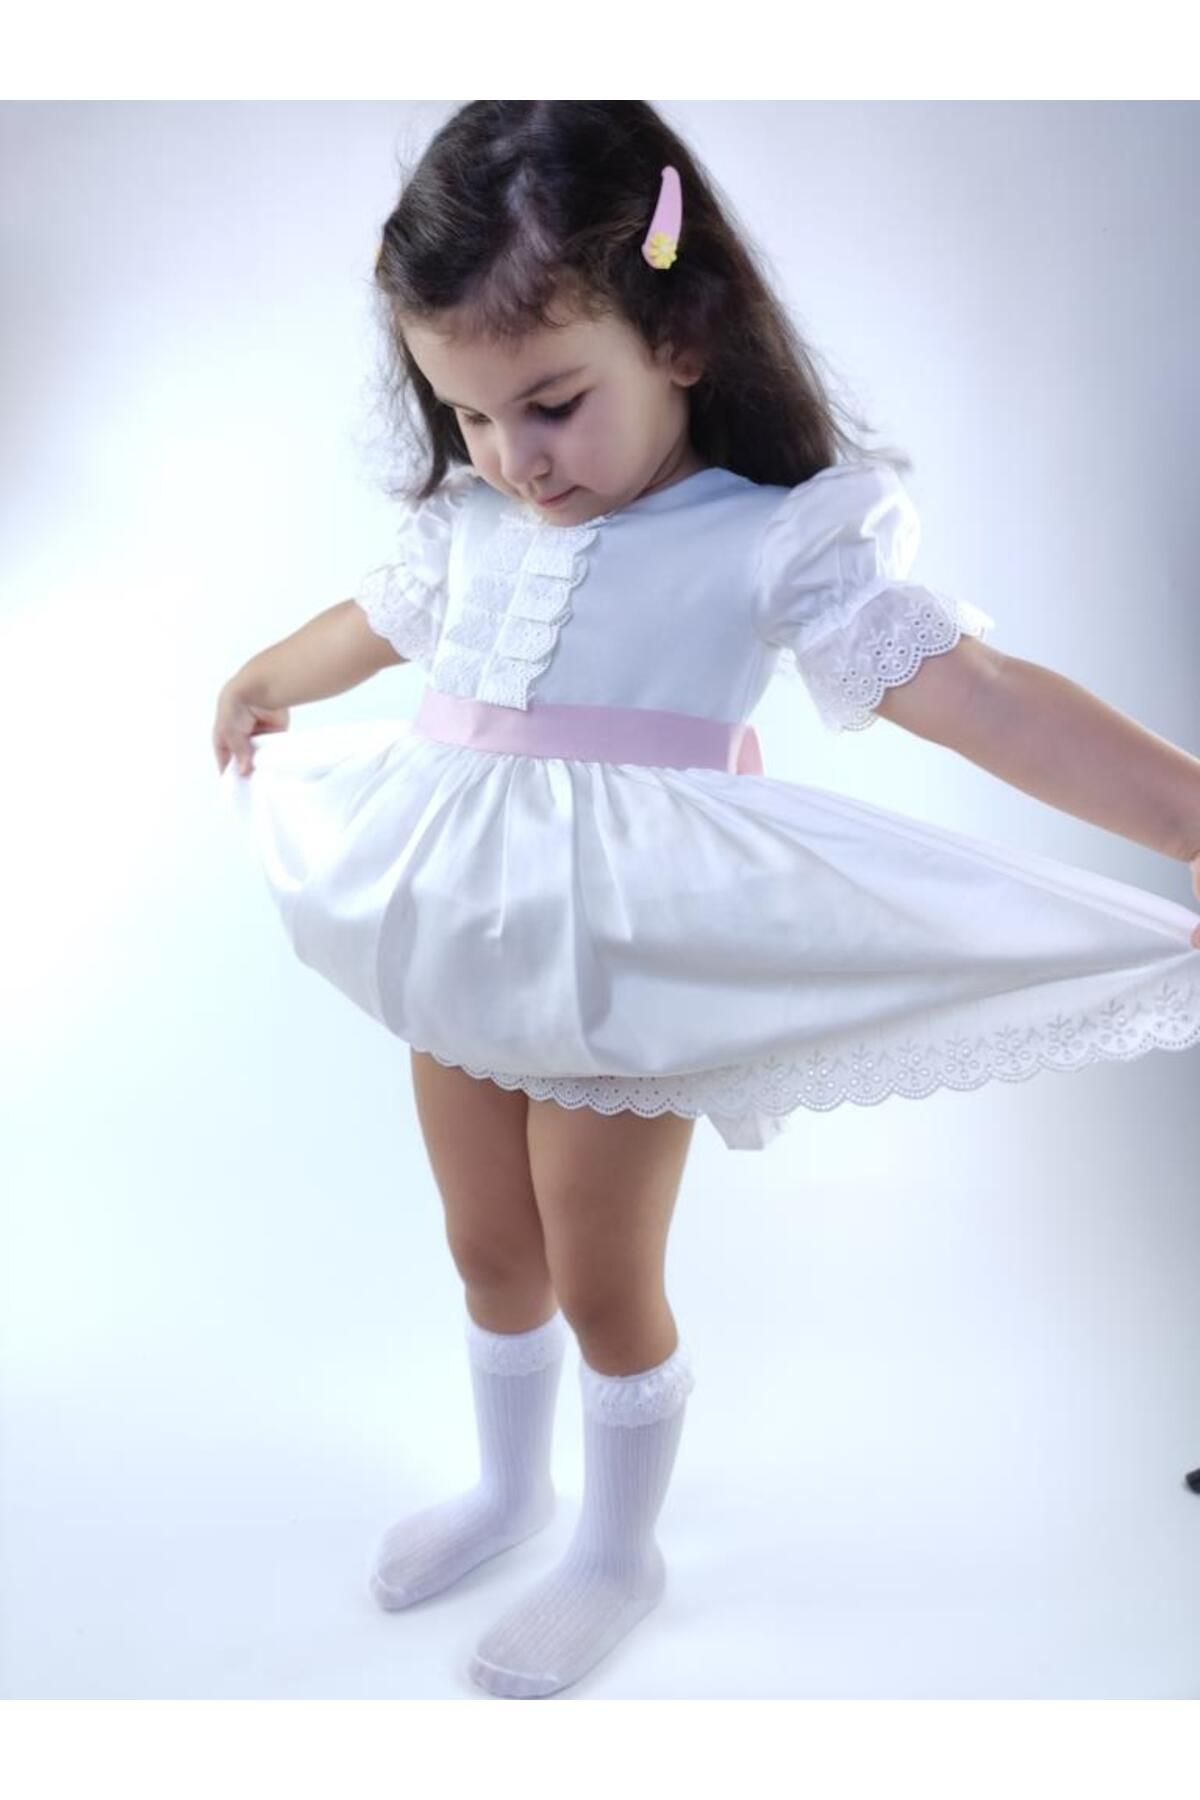 wmını Pamuk Saten Beyaz Prenses Elbise - Kız Çocuk Doğum Günü Elbisesi Id:163